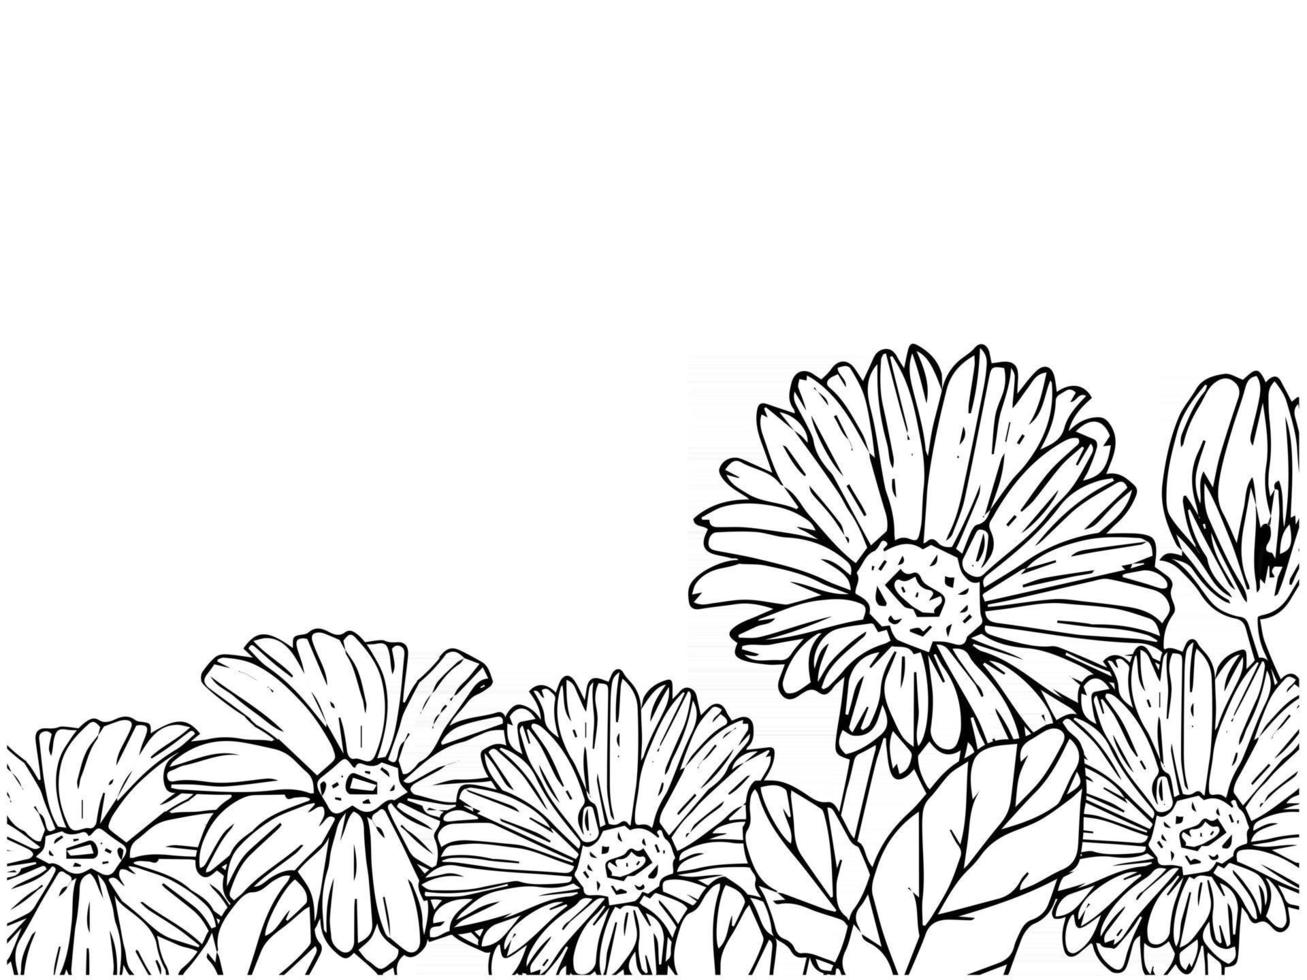 modelo de banner com moldura floral feita de gérberas e folhas. vetor